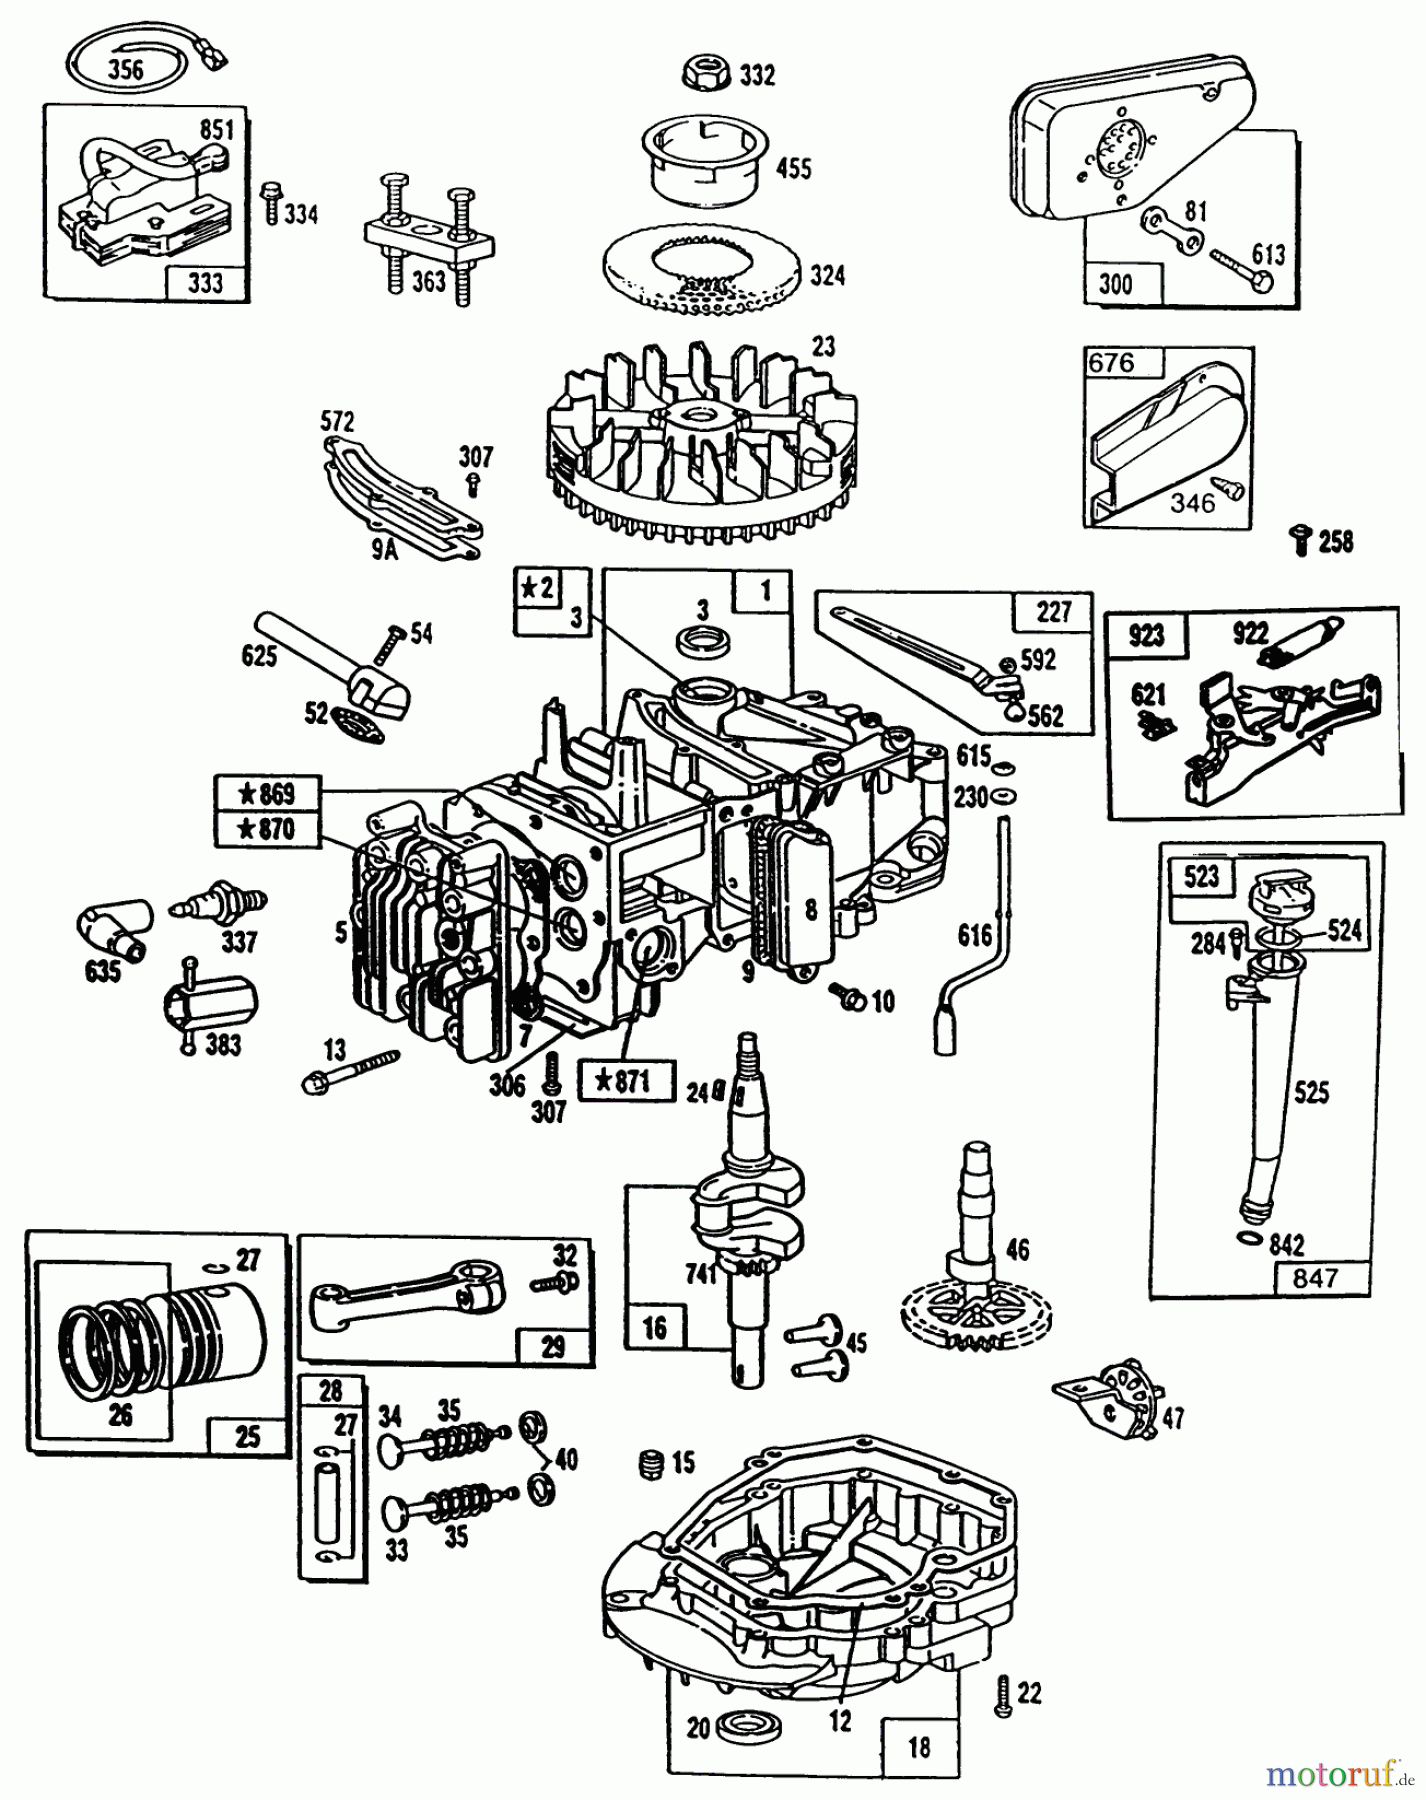  Toro Neu Mowers, Walk-Behind Seite 1 20563 - Toro Lawnmower, 1990 (0000001-0999999) ENGINE BRIGGS & STRATTON MODEL NO. 124702-3115-01 #1